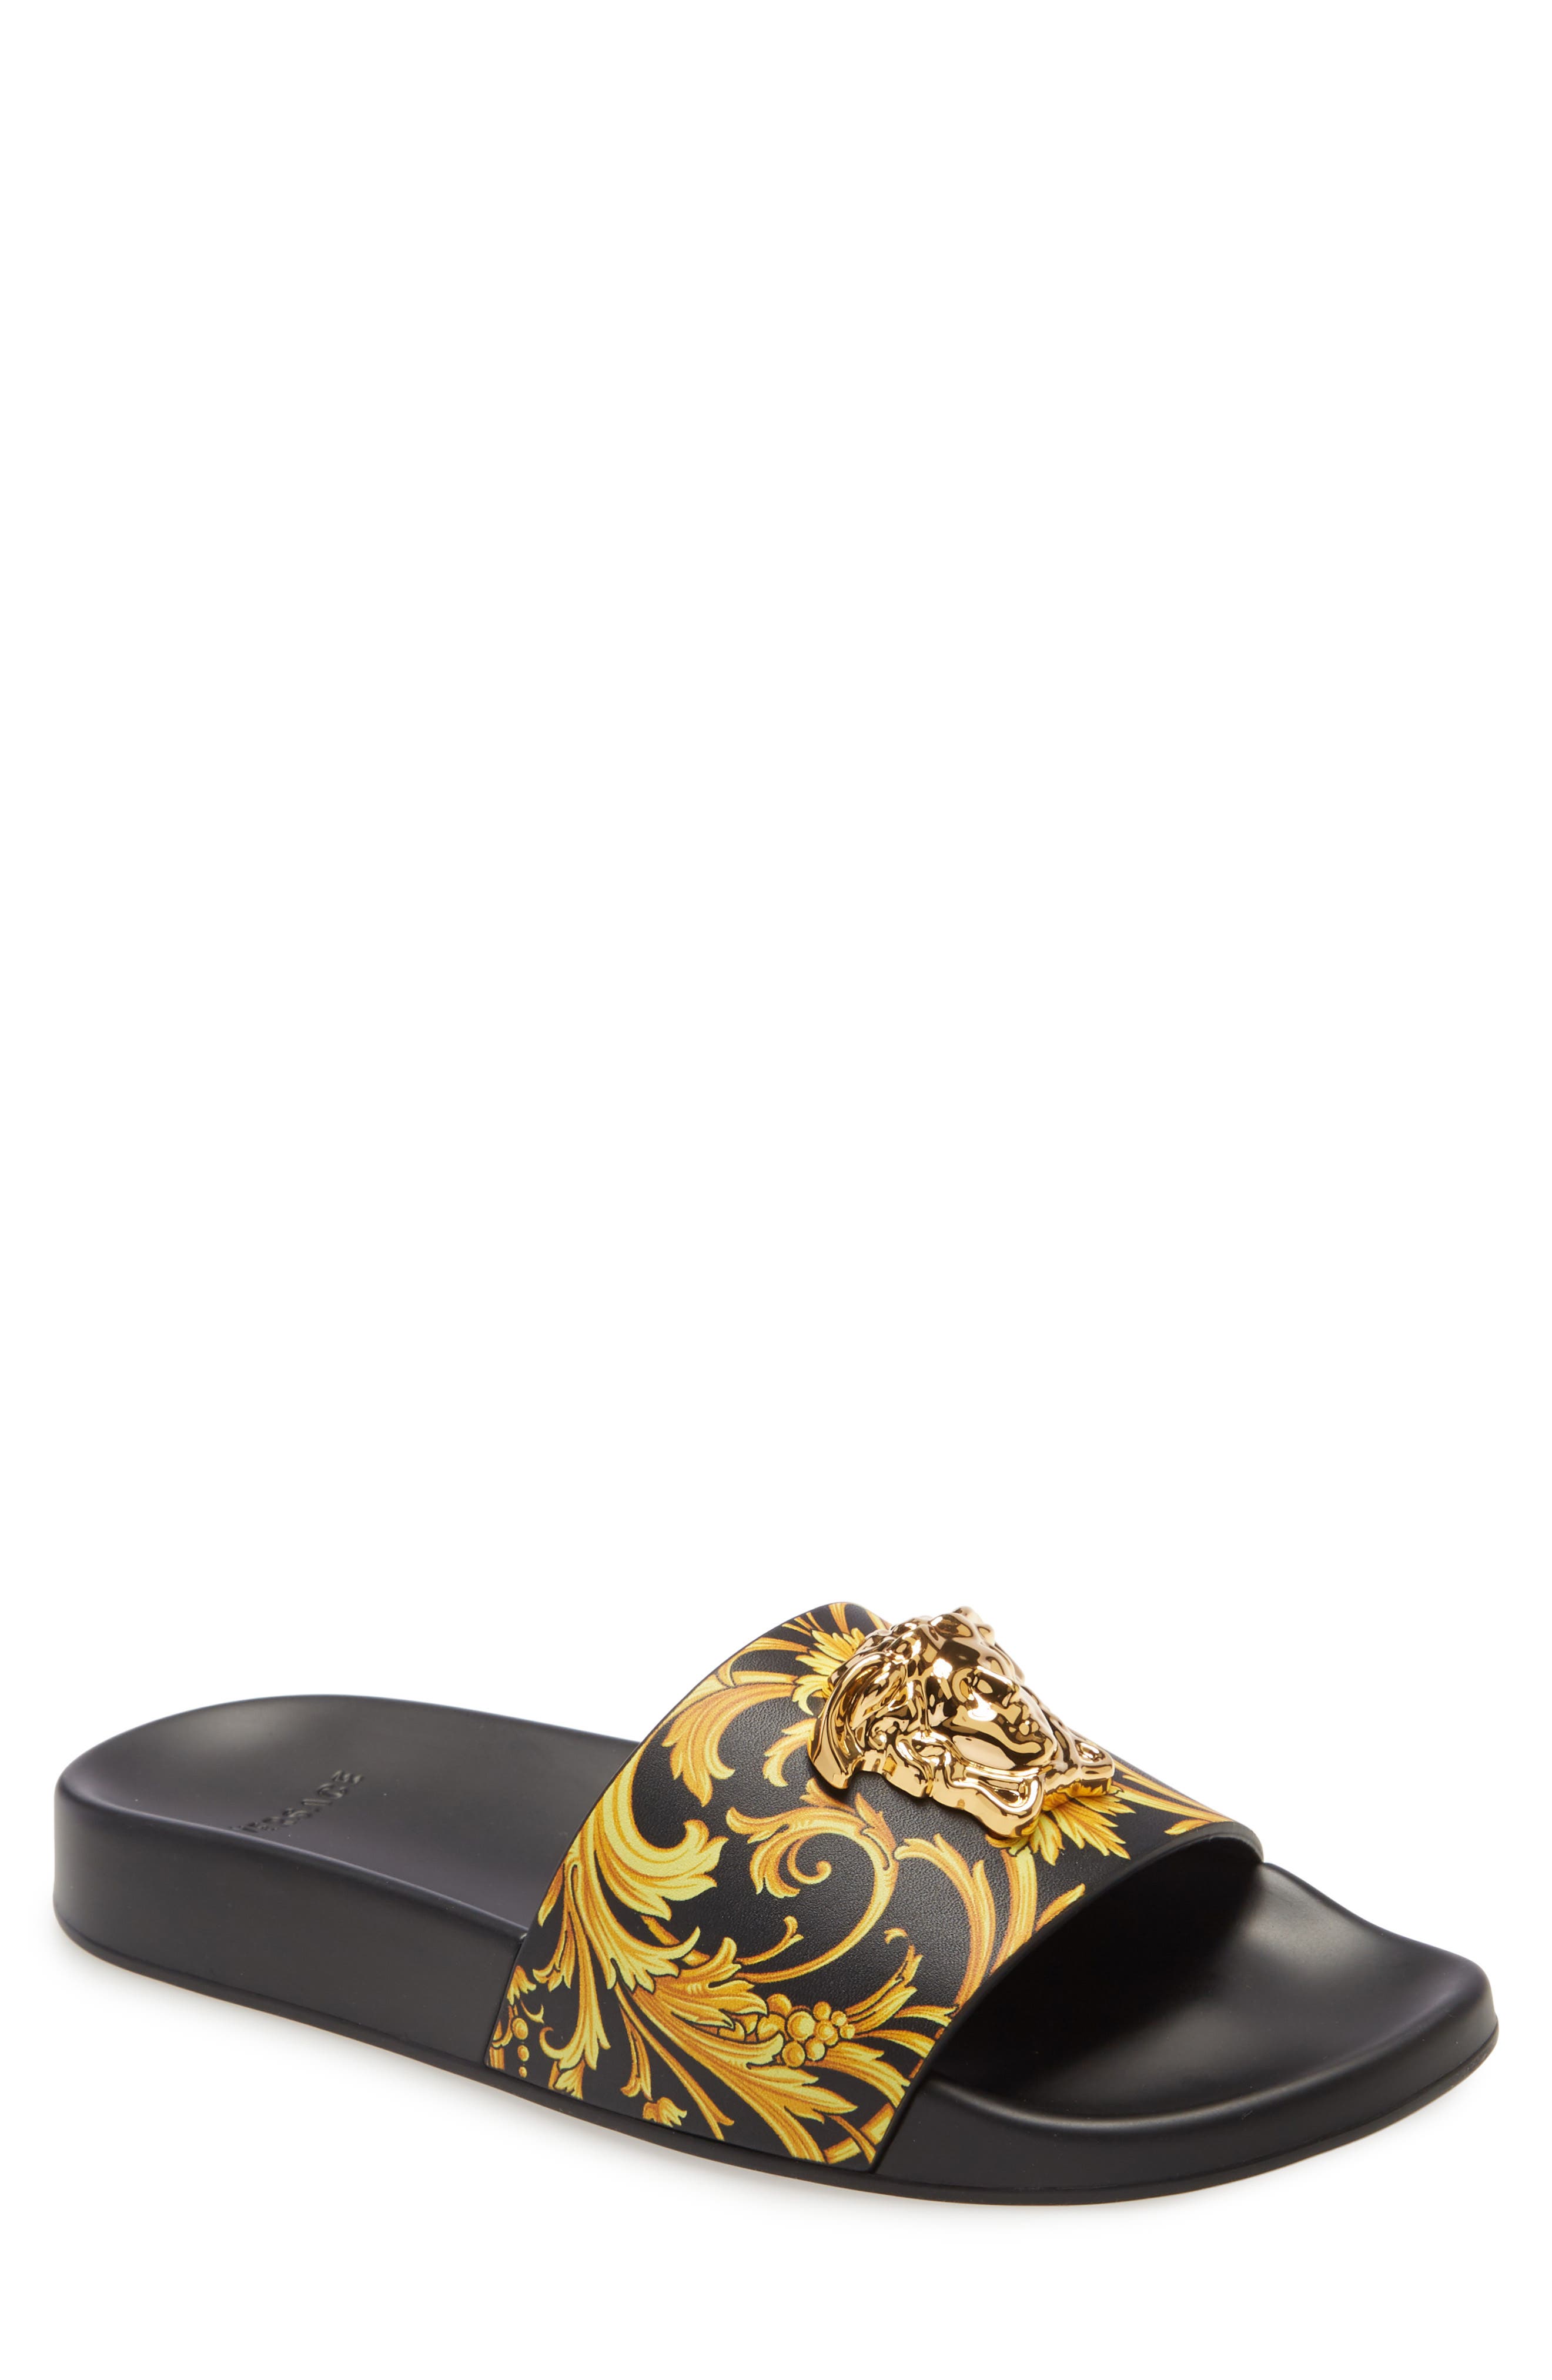 versace women's slide sandals